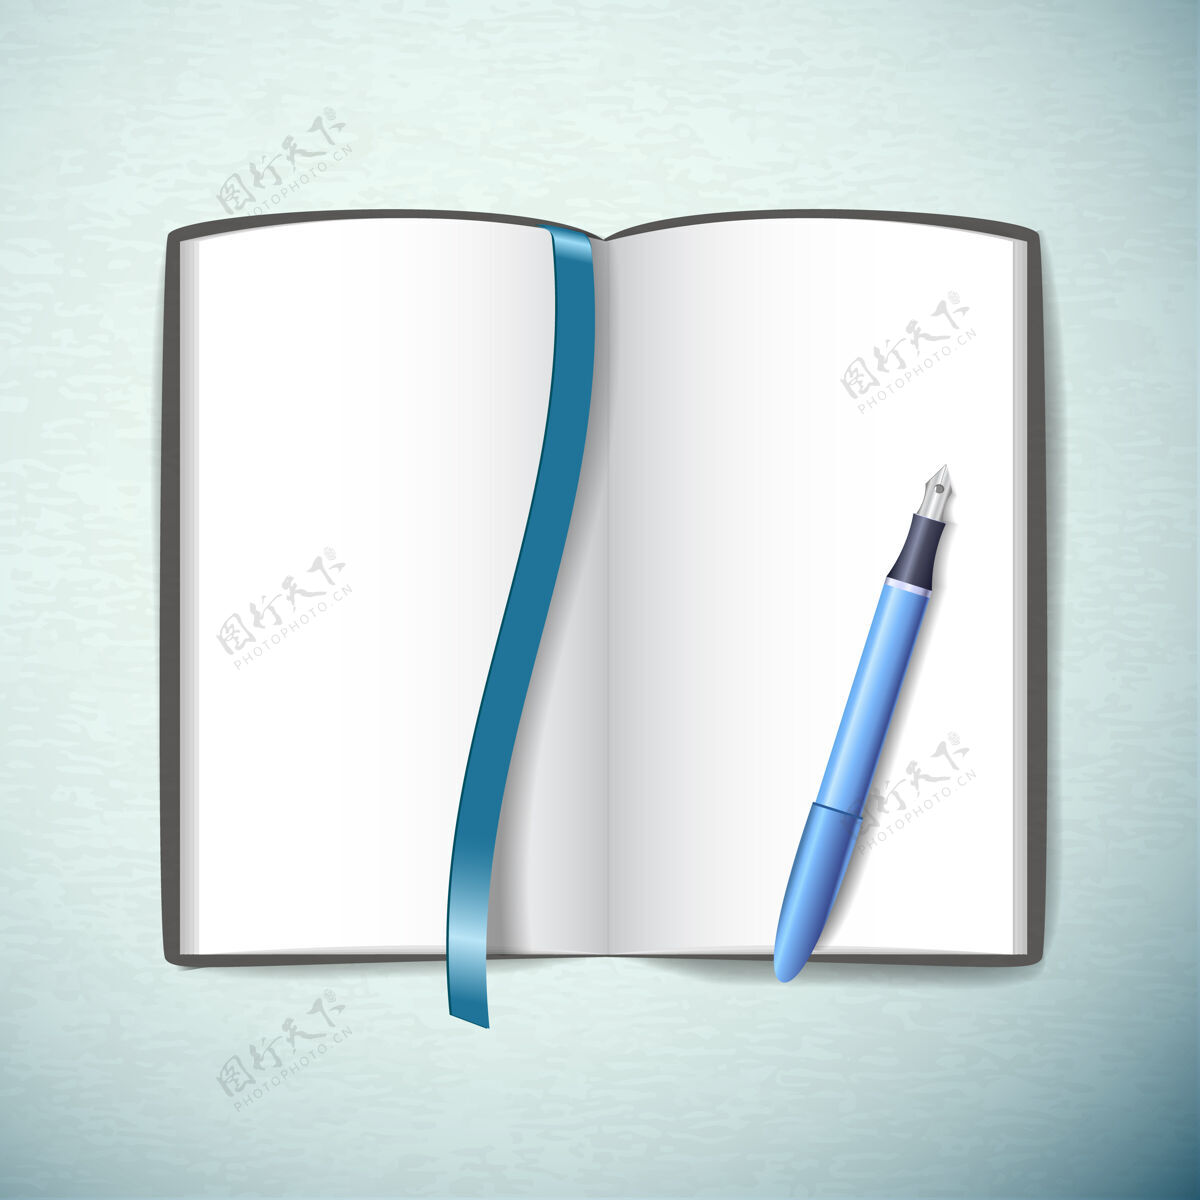 素描本打开空白的素描本与钢笔和书签在蓝色单位笔记本商业绘画